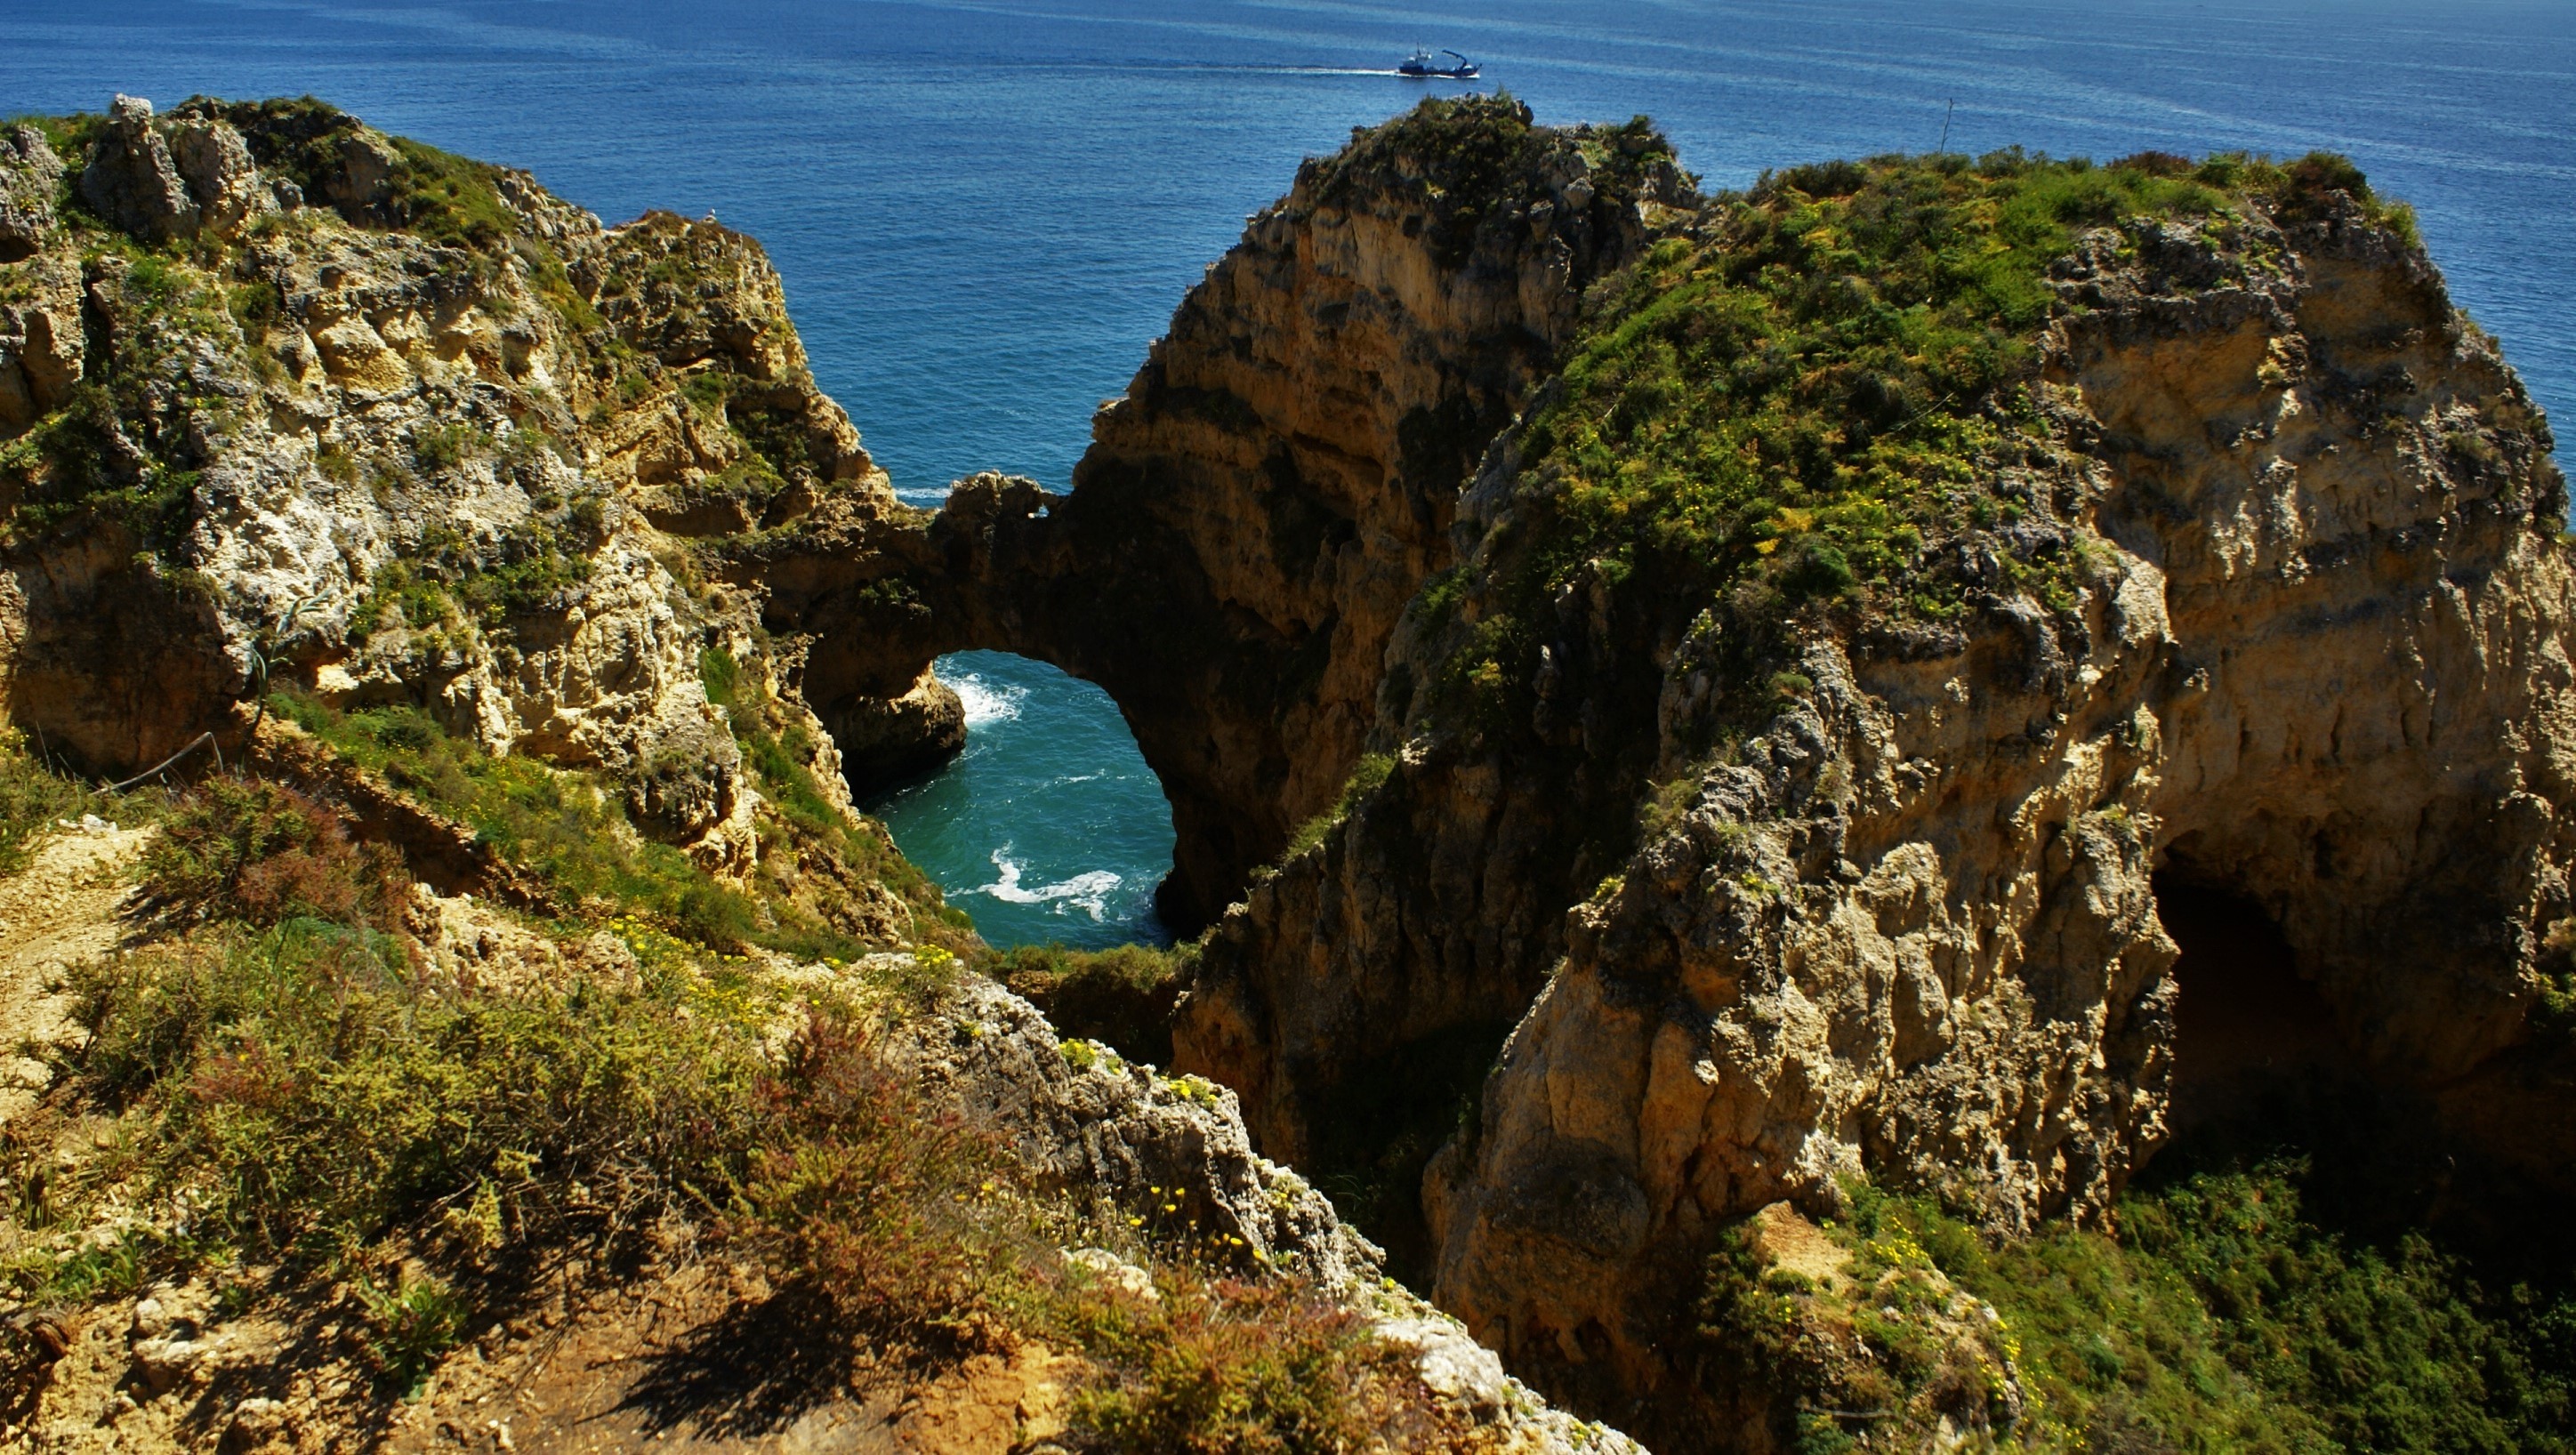 General 2896x1636 ponta da piedade Portugal nature coast rocks